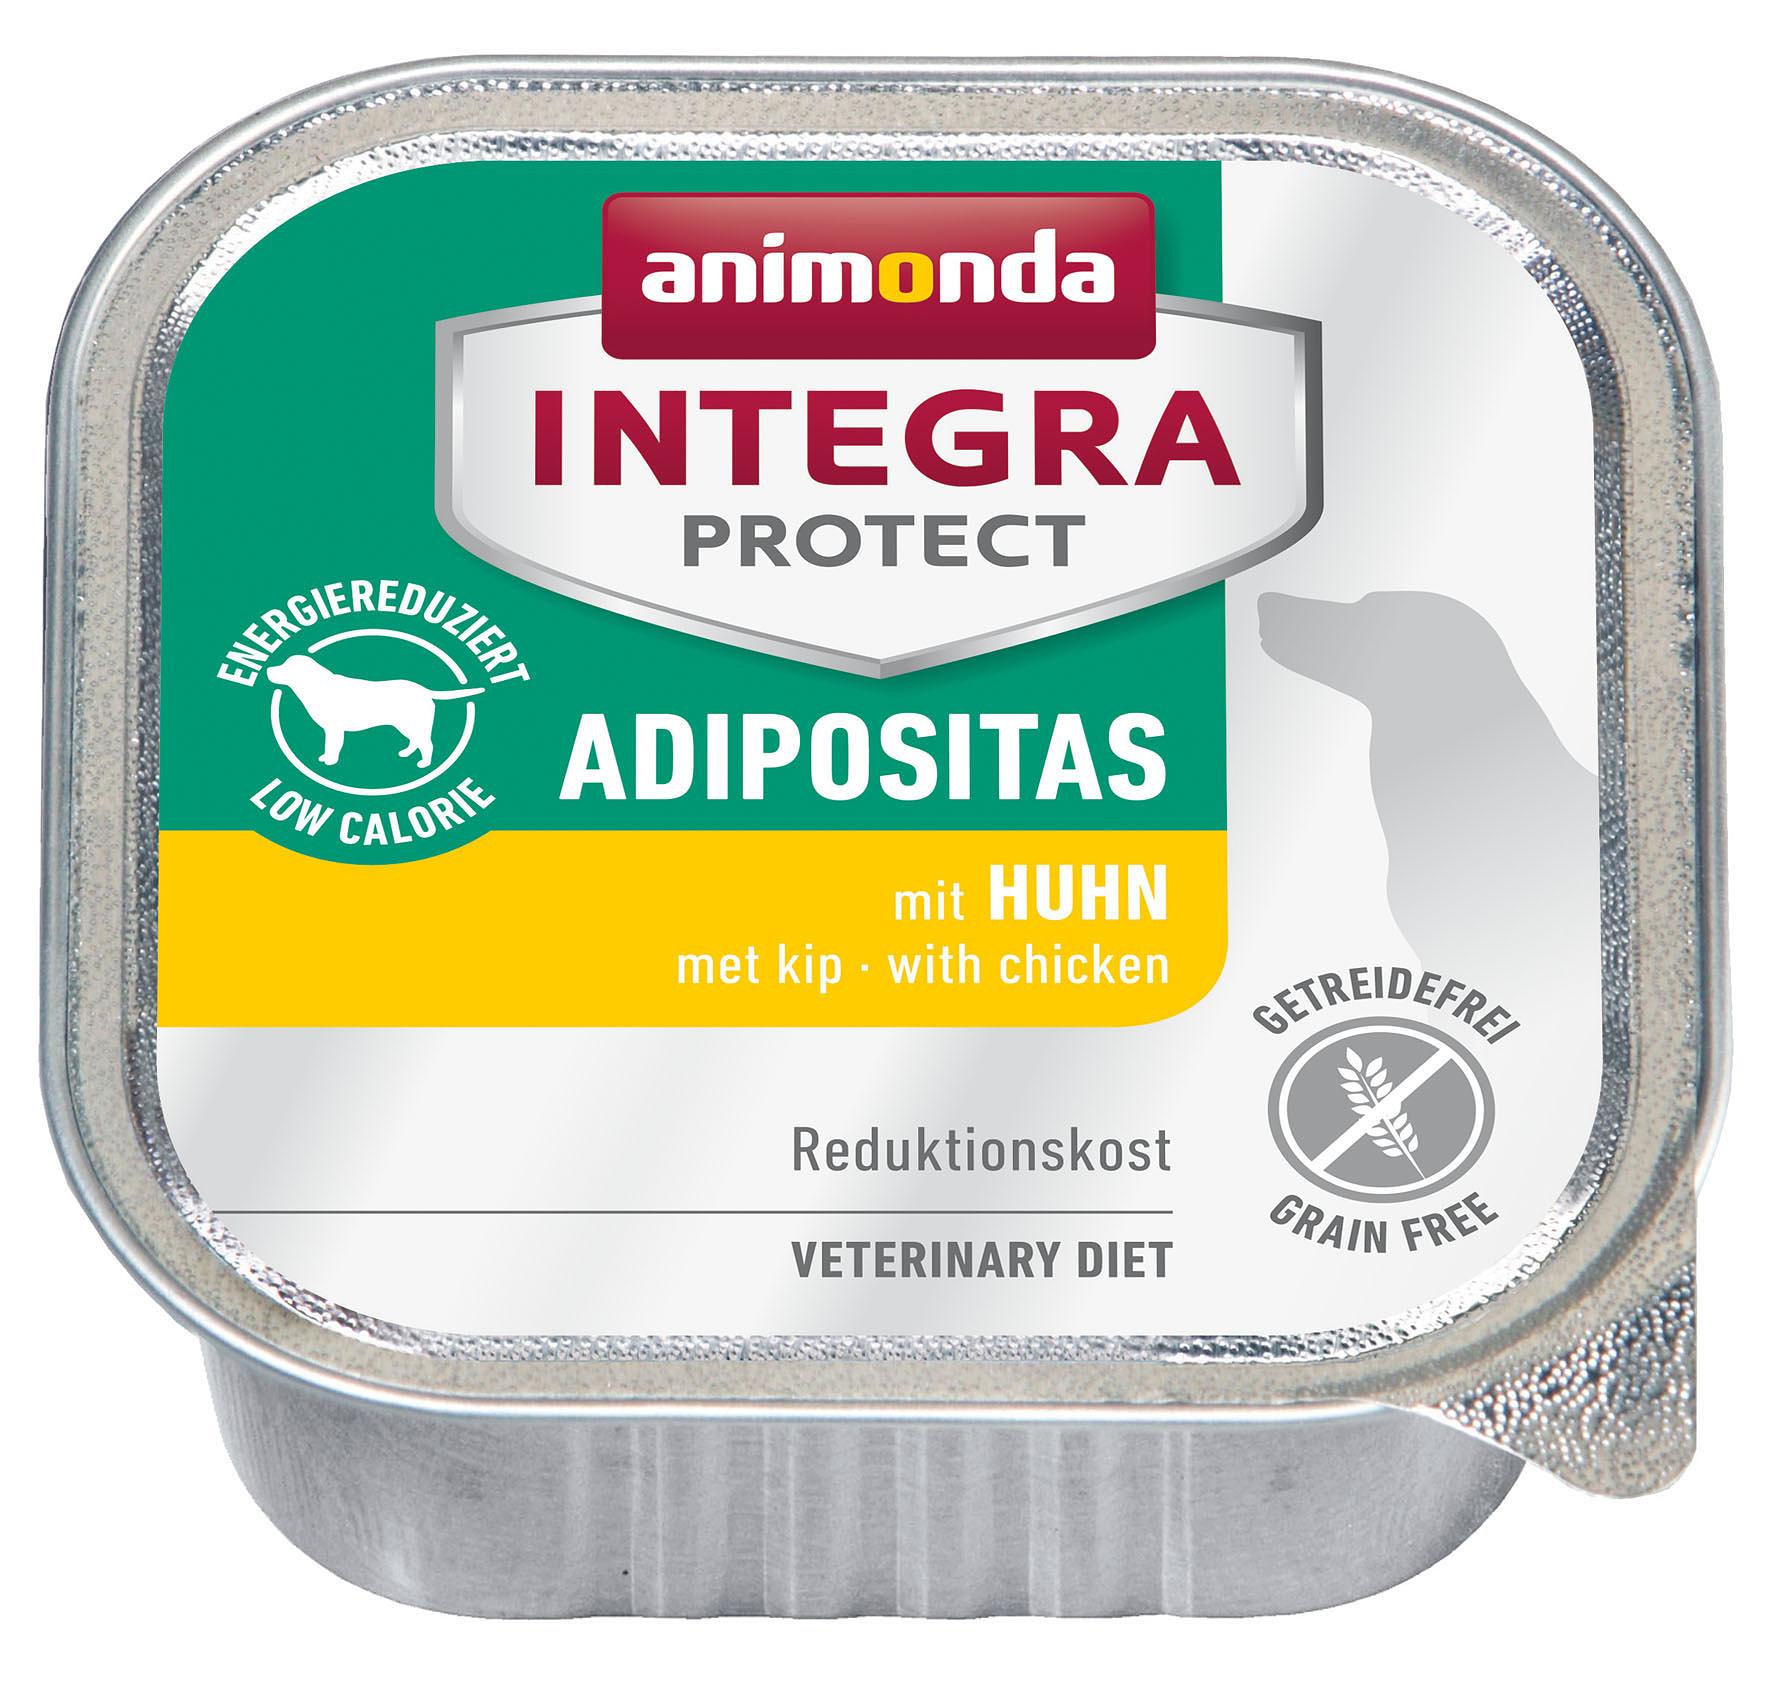 animonda Integra Protect, Adipositas